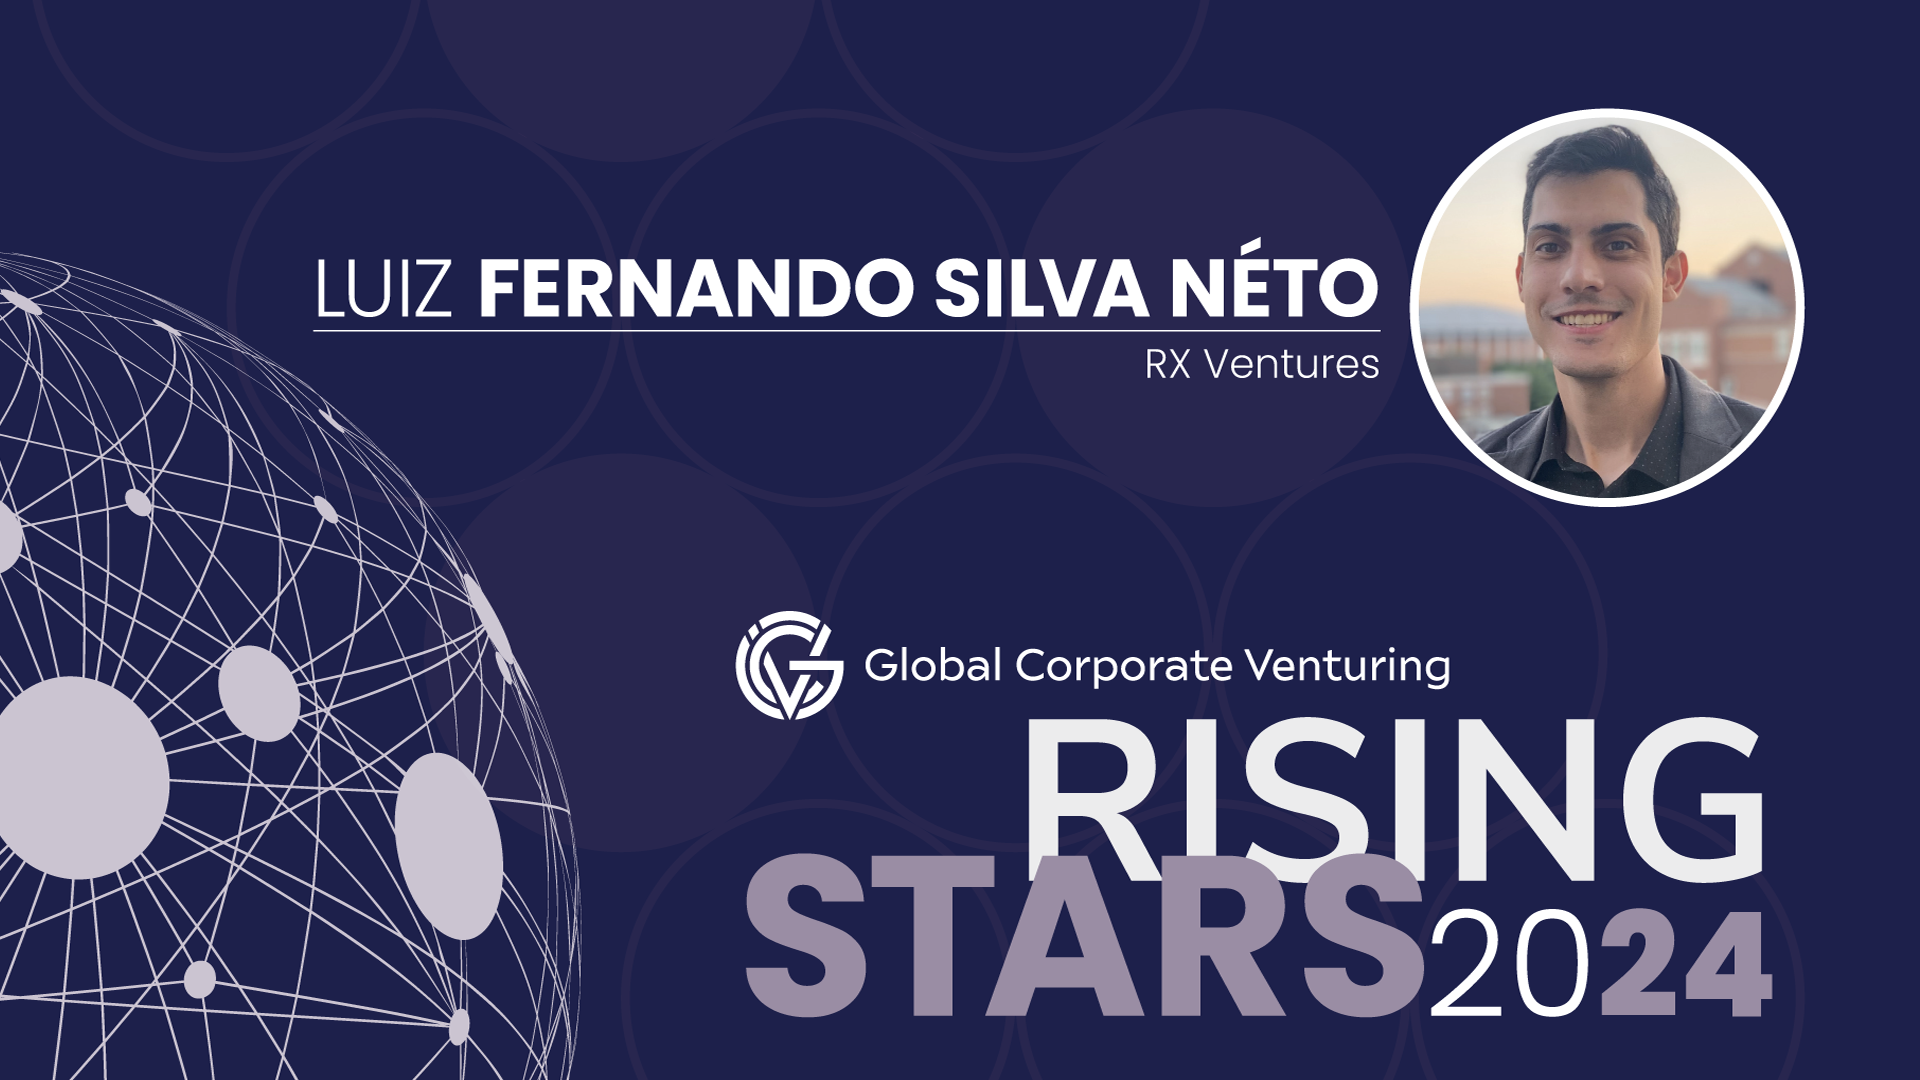 Luiz Fernando Silva Néto, RX Ventures